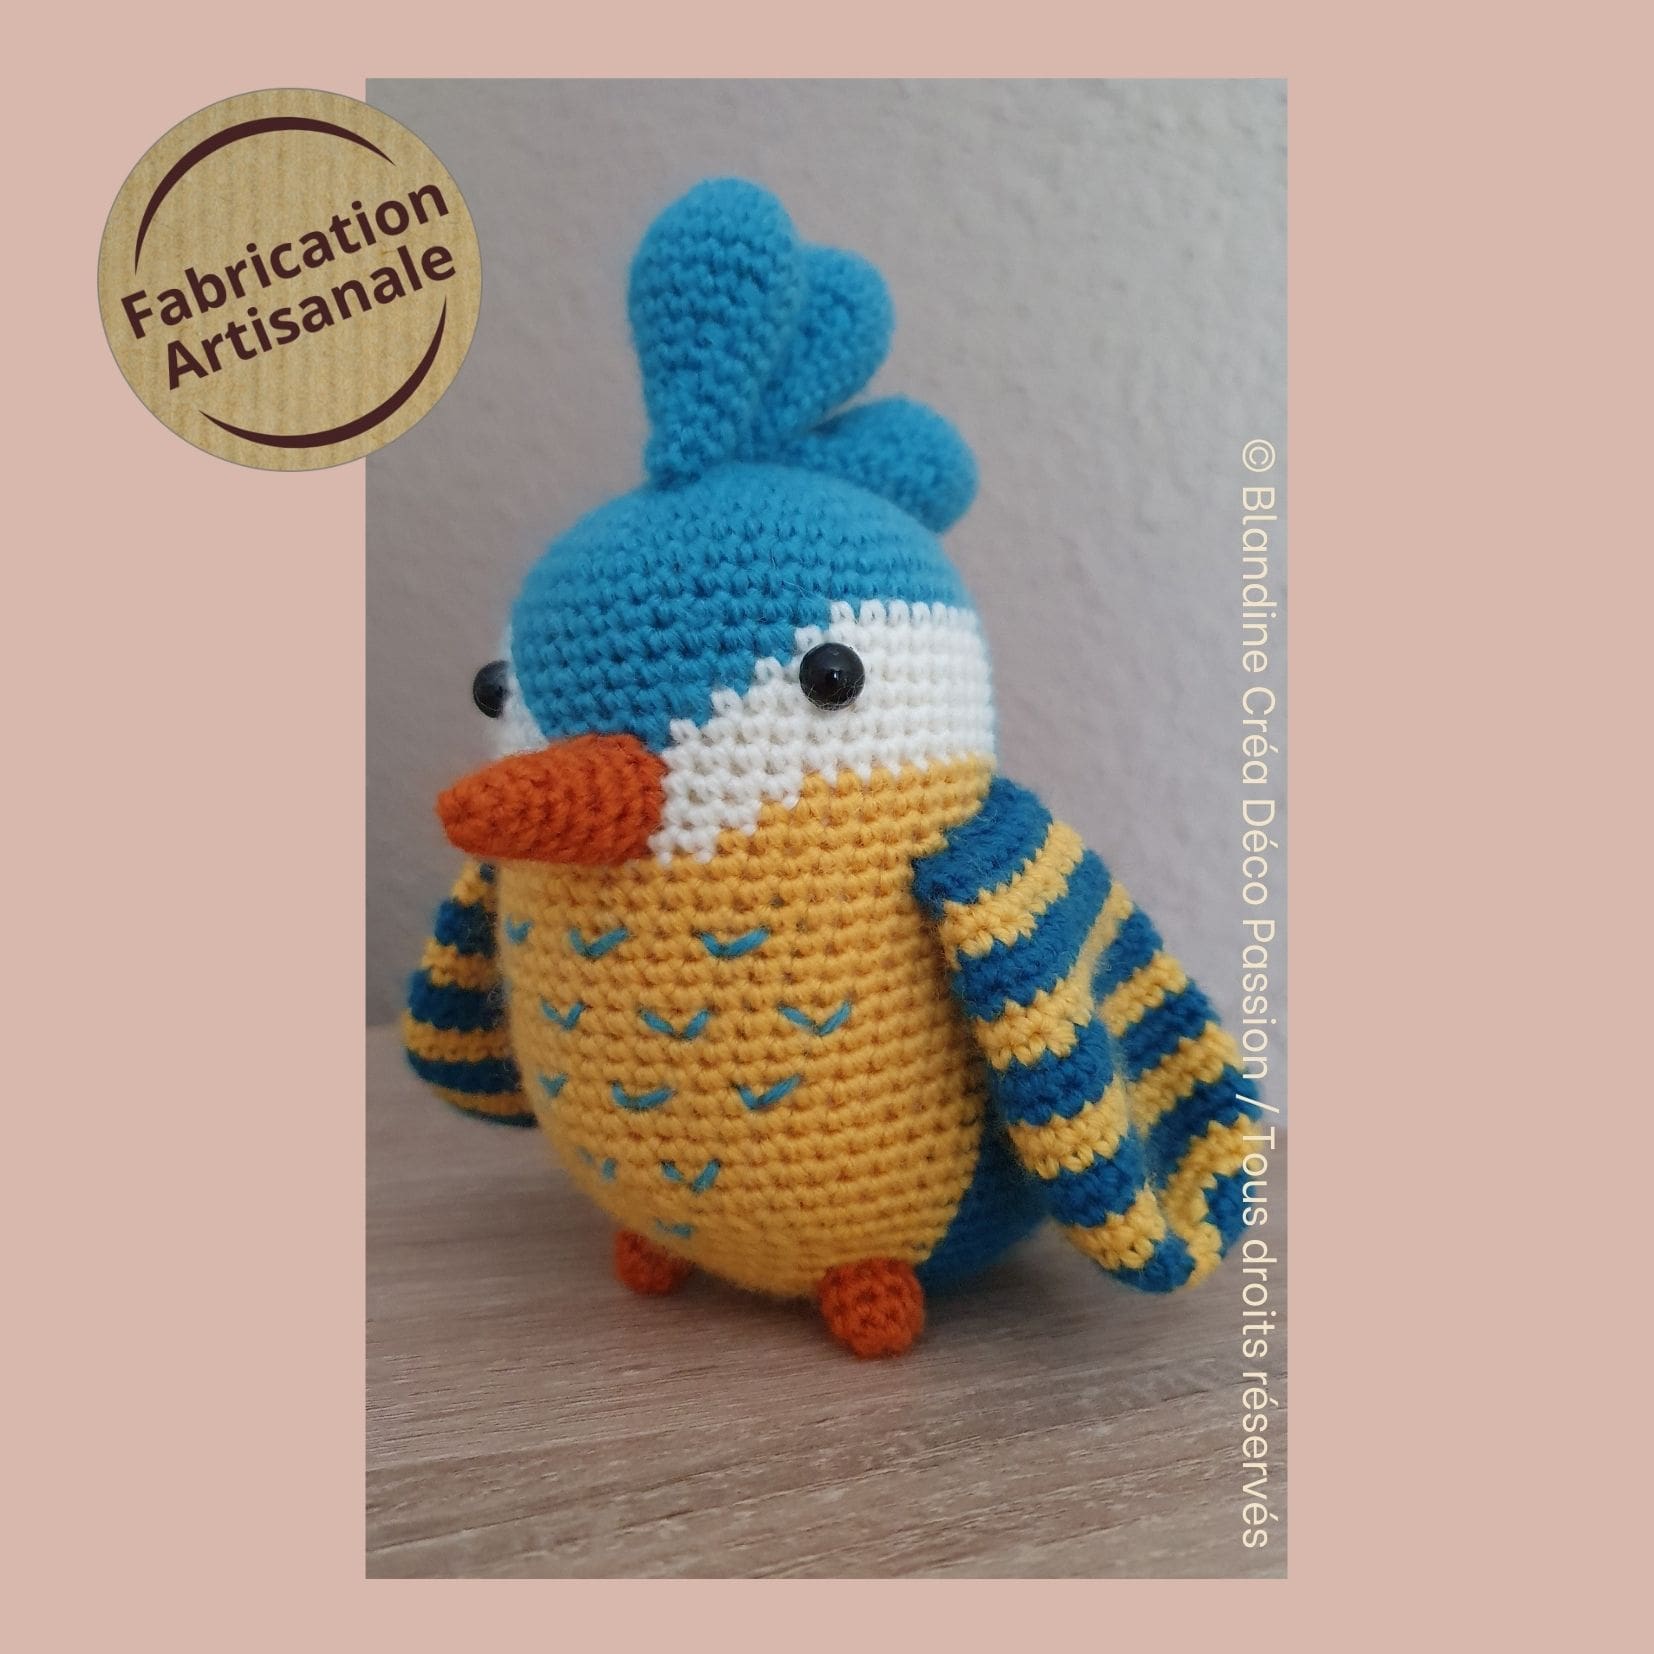 Oiseau décoratif au crochet - Coloris jaune / bleu